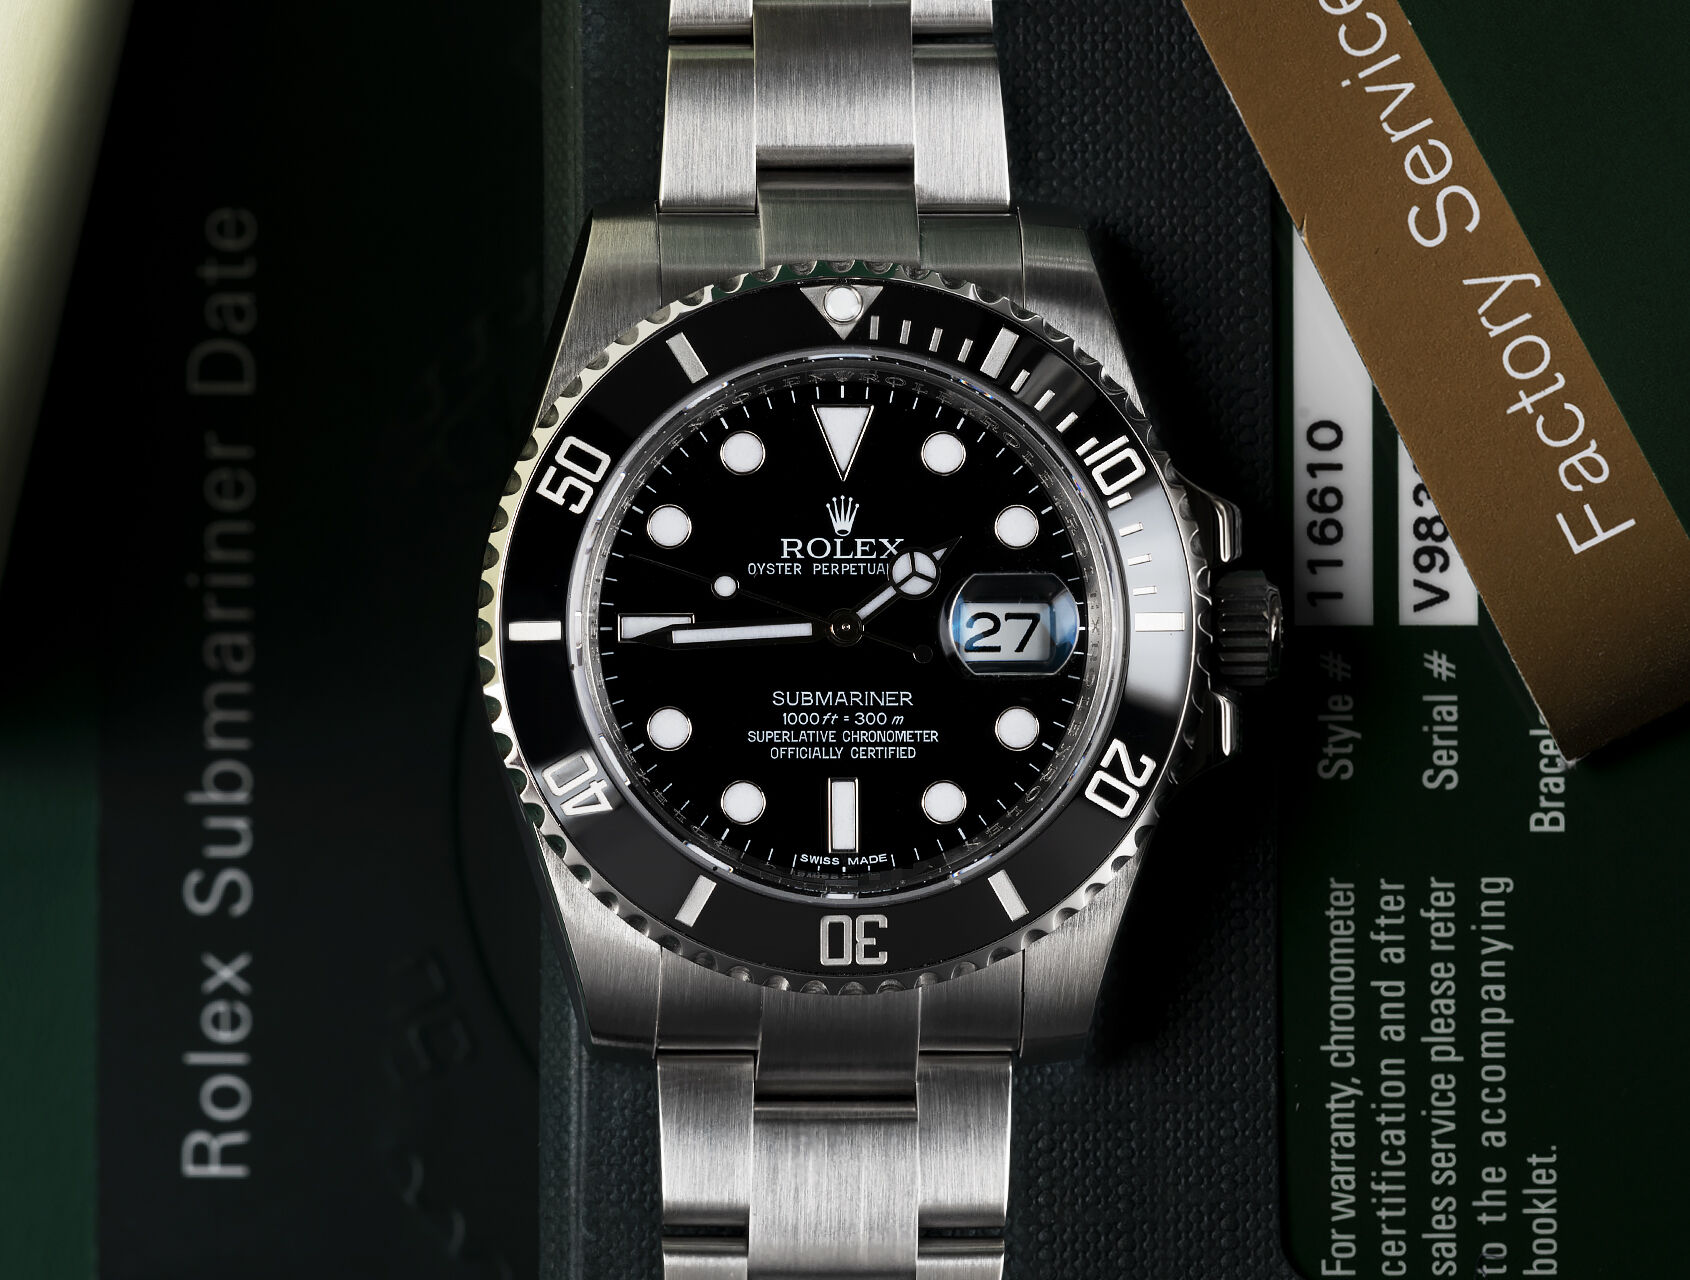 ref 116610LN | 116610LN - Box & Certificate | Rolex Submariner Date